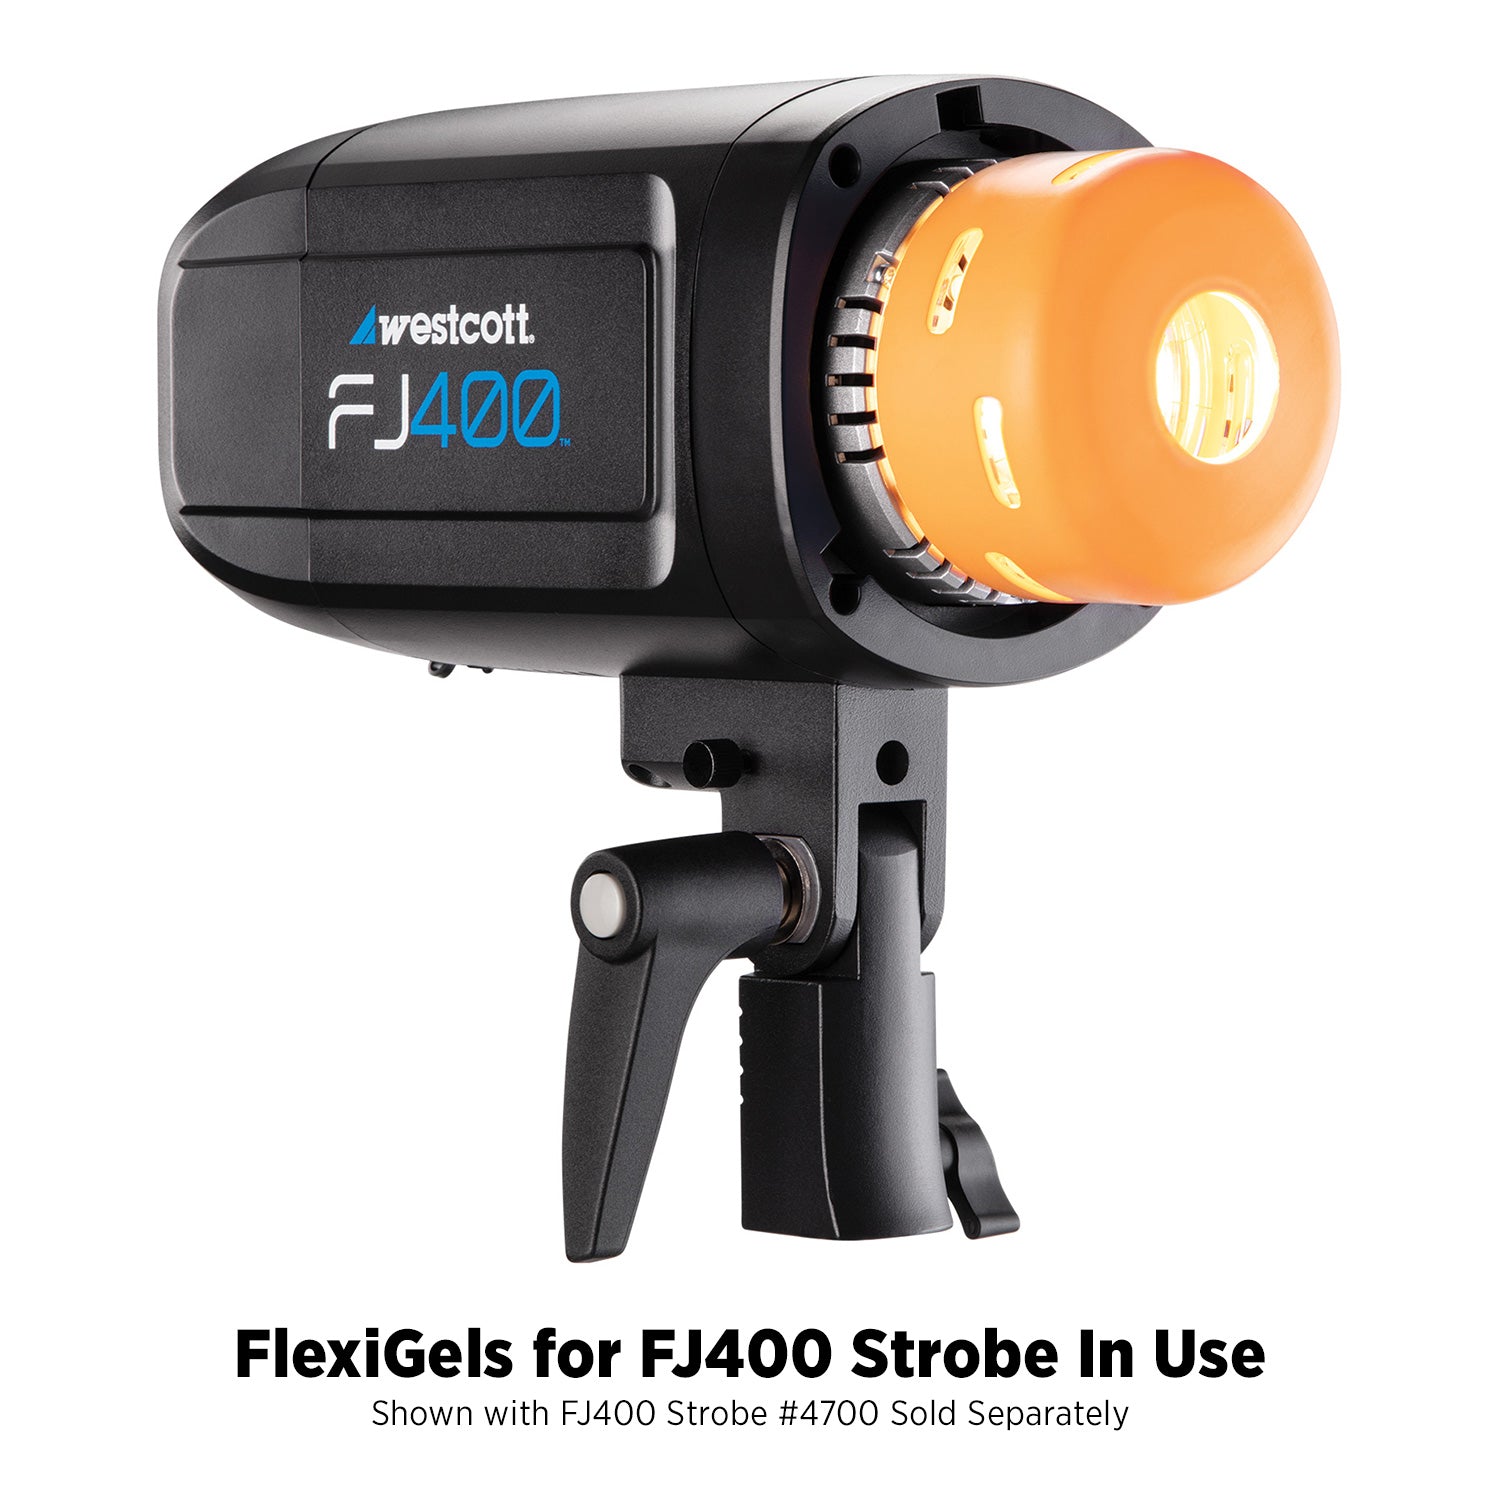 FlexiGels for FJ400 Strobe